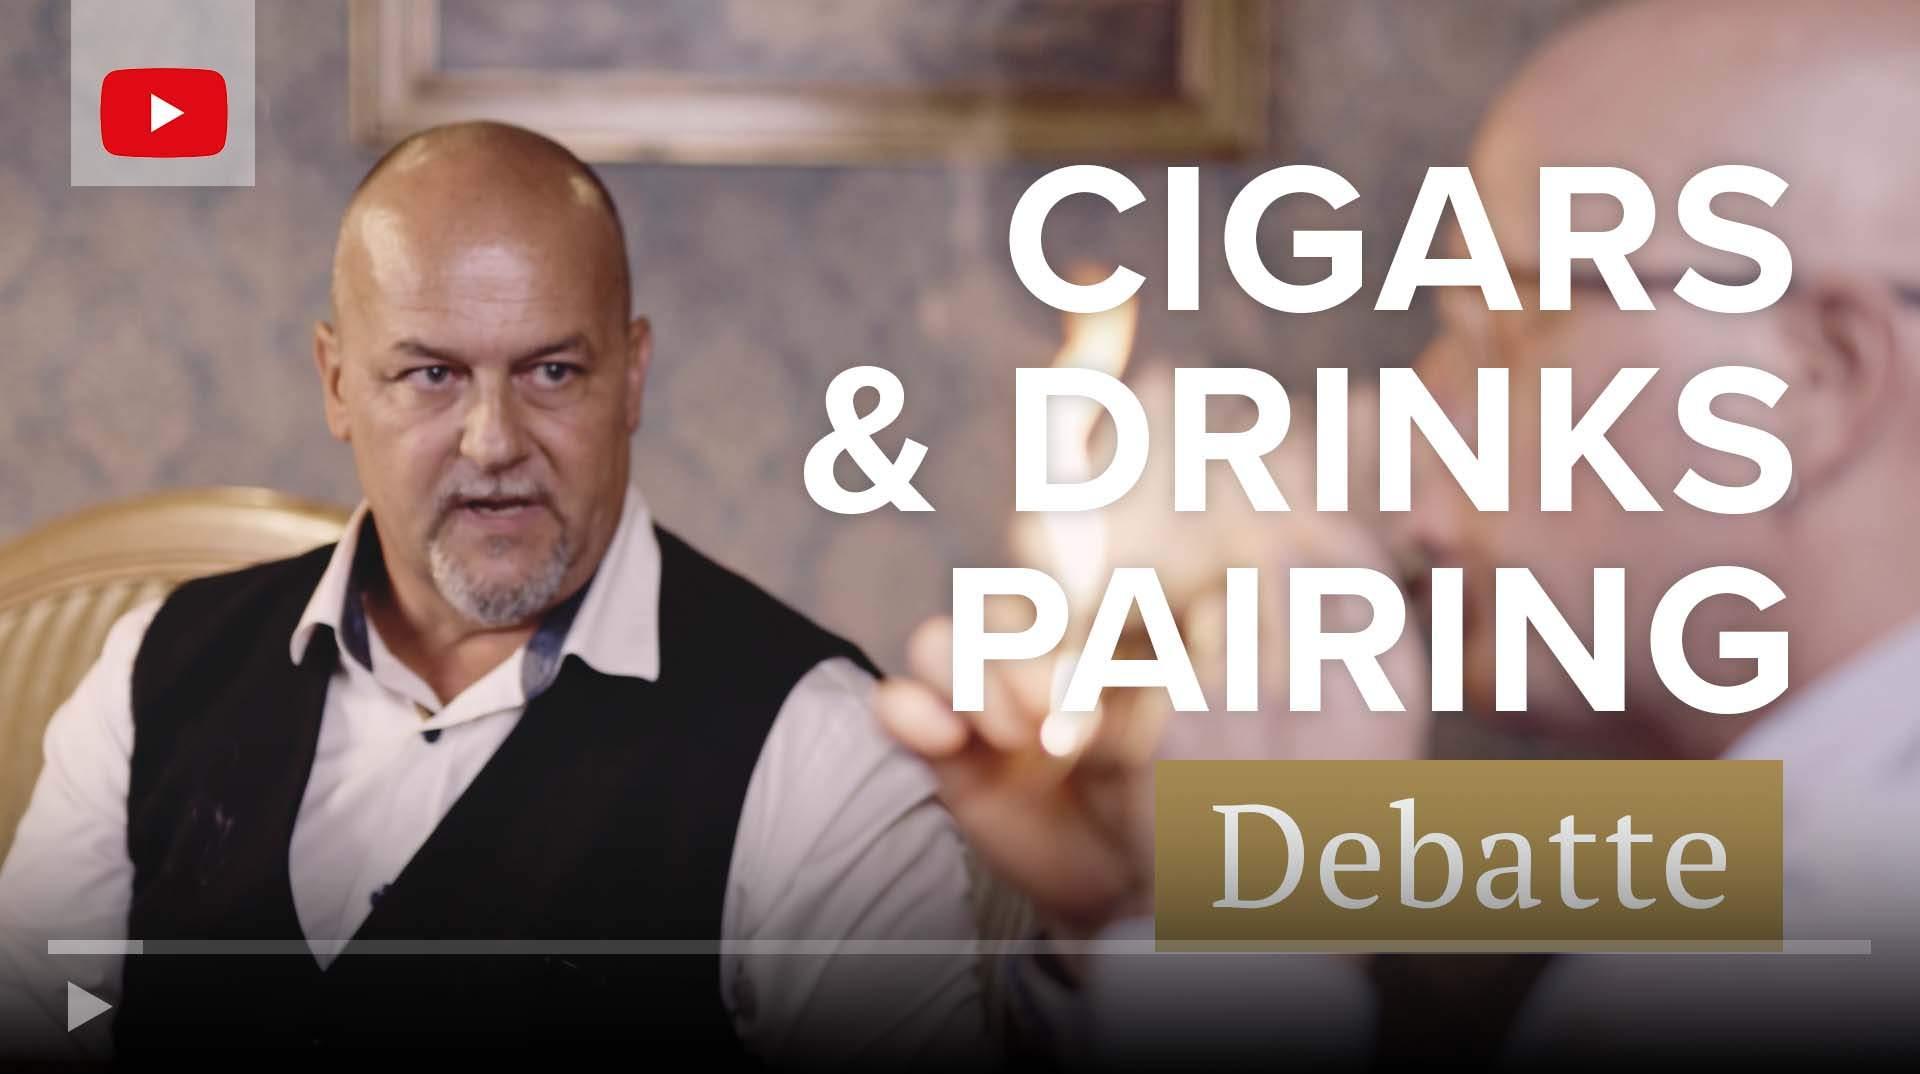 Zigarren Pairings Balance kontra Komplementarität